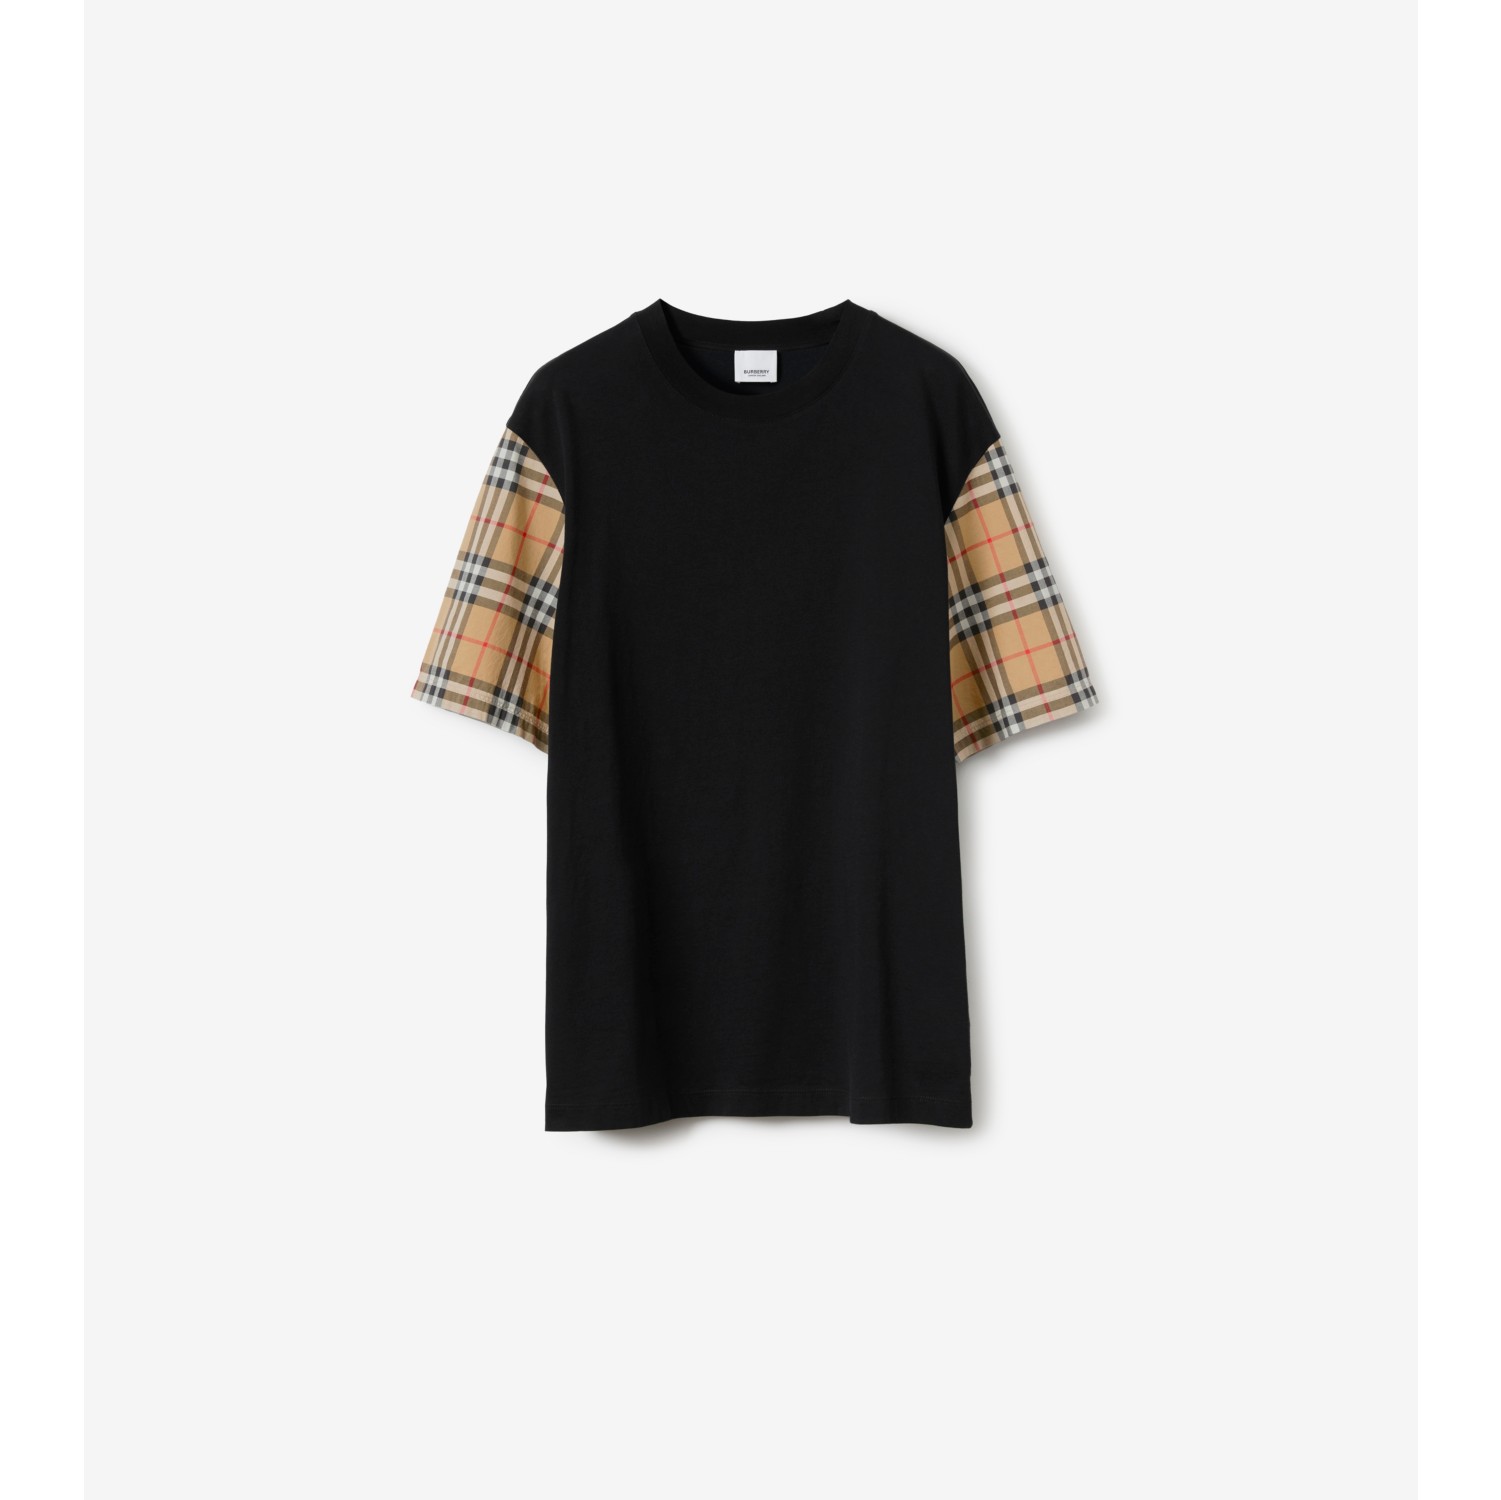 Baumwoll-T-Shirt mit Check-Ärmeln